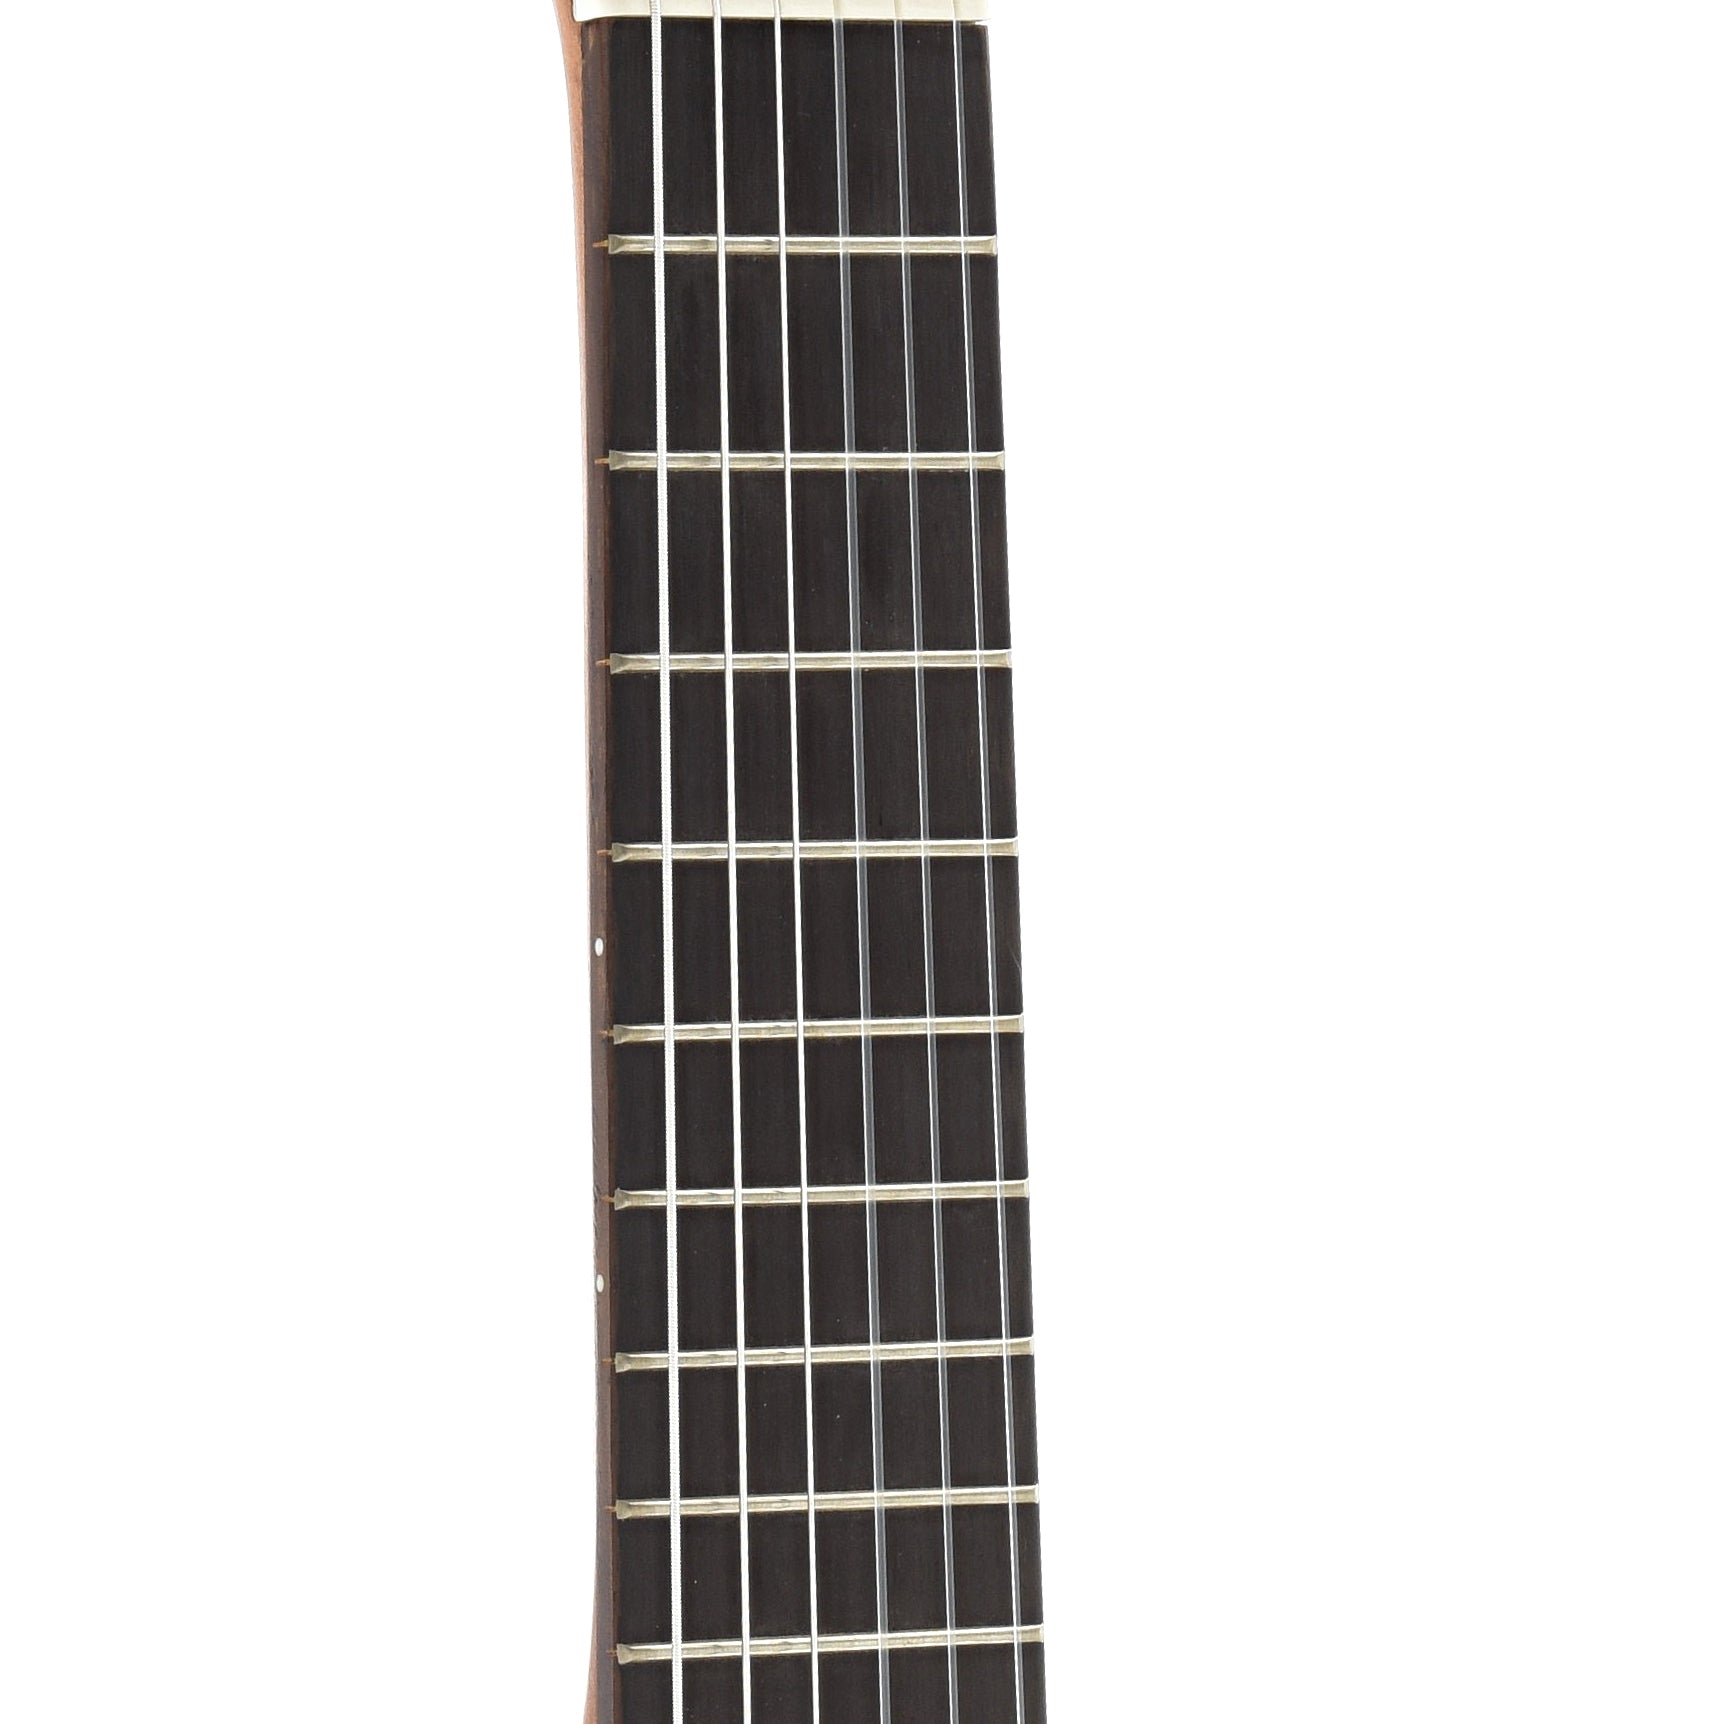 Fretboard of Yamaha GL1 Guitalele Guitar Ukulele